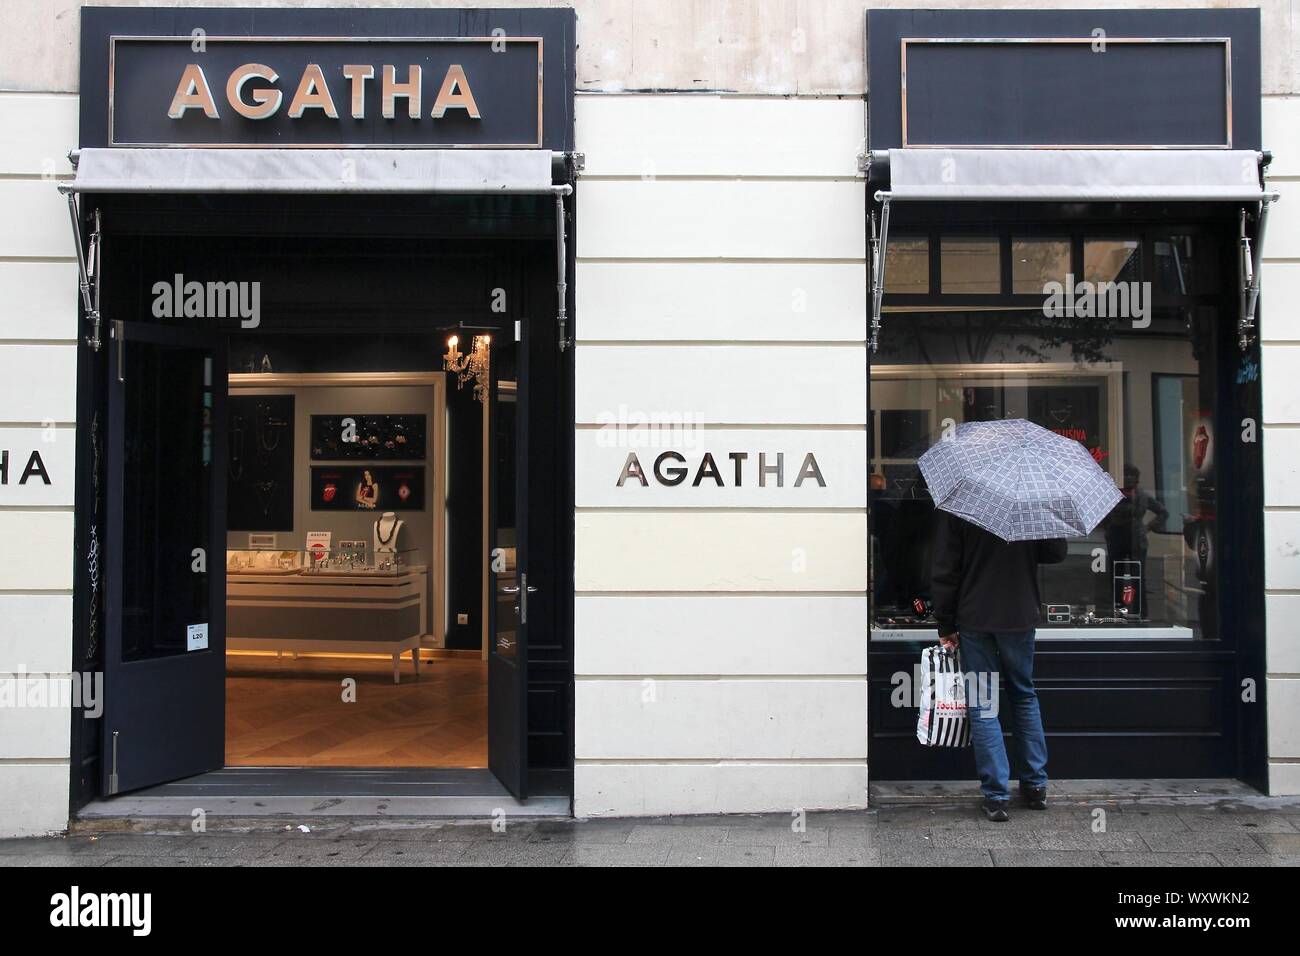 MADRID, Spanien - 21. OKTOBER 2012: Agatha Schmuck Shop in Madrid. Agatha ist eine französische Schmuck Marke im Jahr 1974 in Paris gegründet. Stockfoto